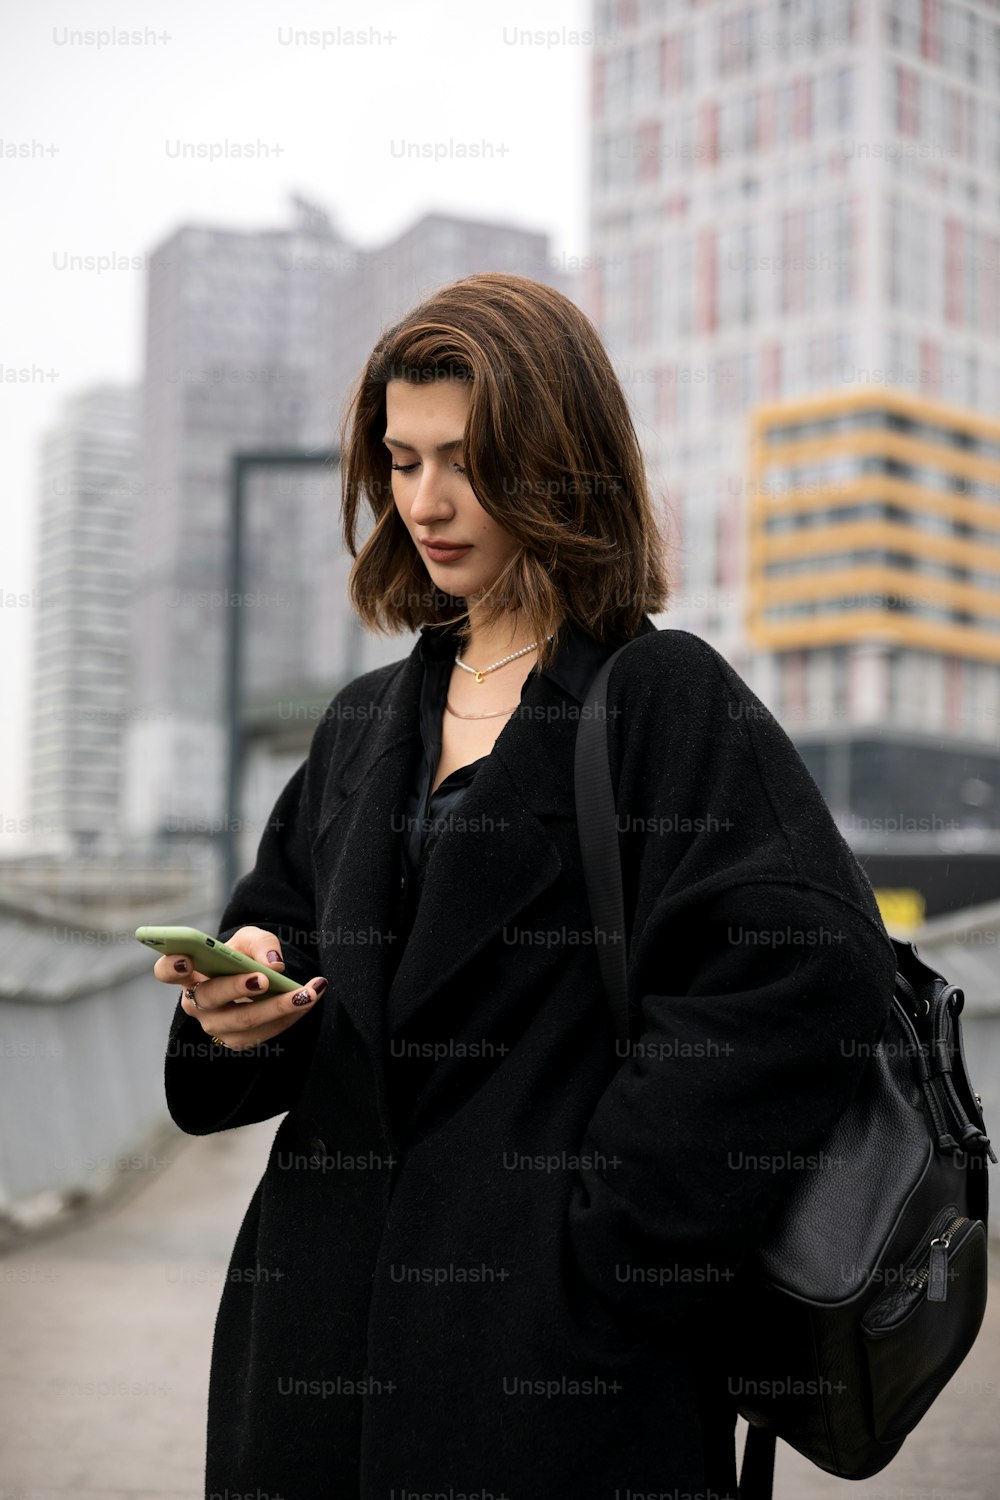 검은 코트를 입은 여자가 휴대폰을 보고 있다